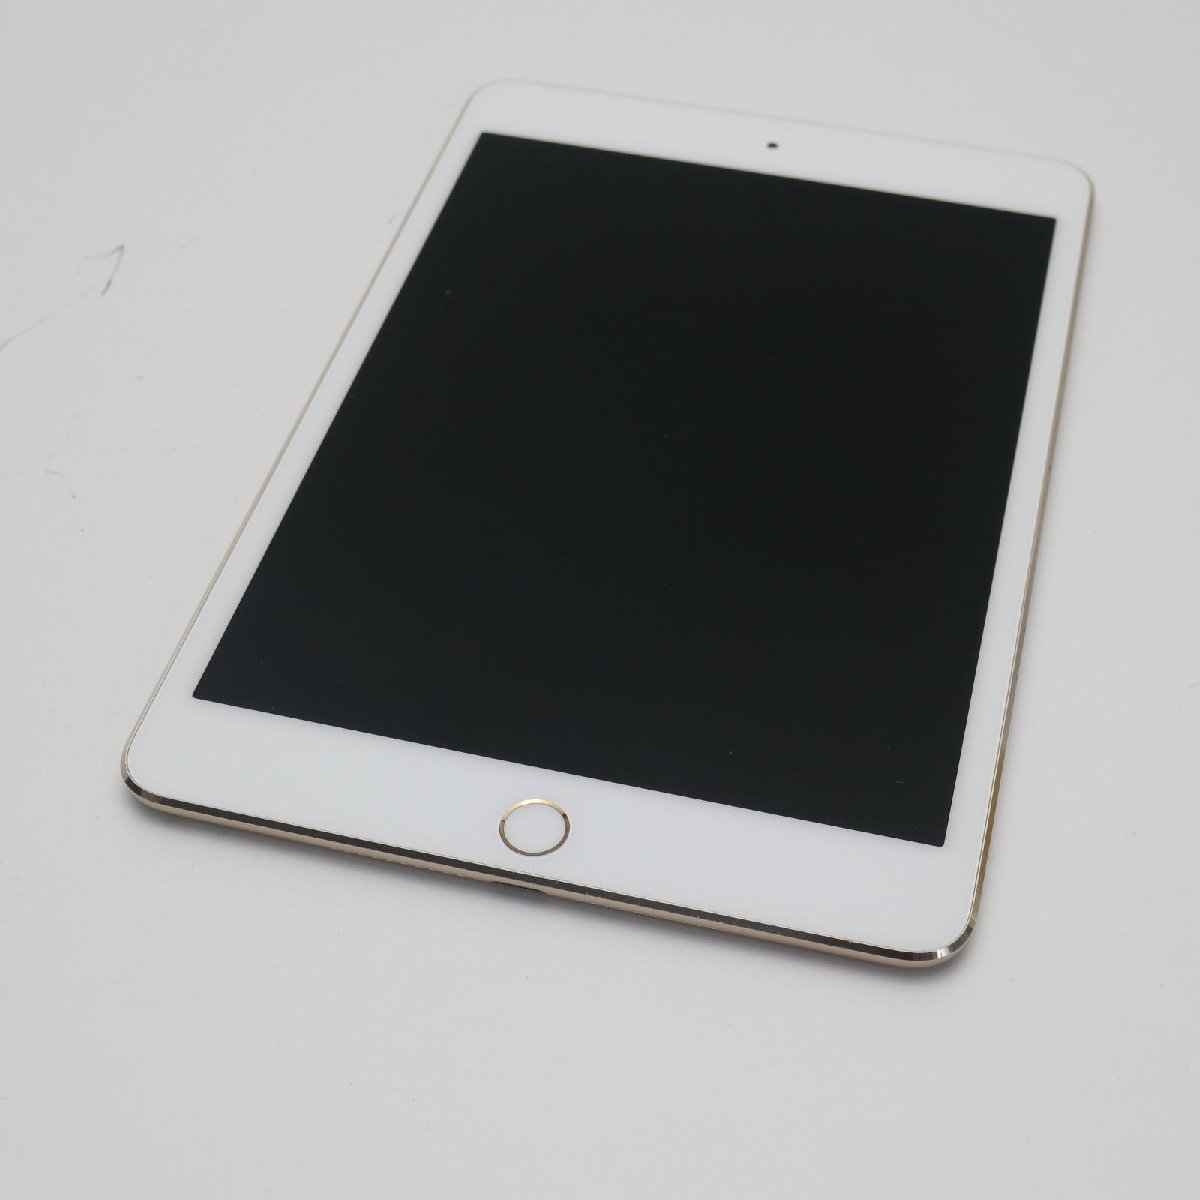 美品 iPad mini 4 Wi-Fi 16GB ゴールド 即日発送 タブレットApple 本体 あすつく 土日祝発送OK_画像1